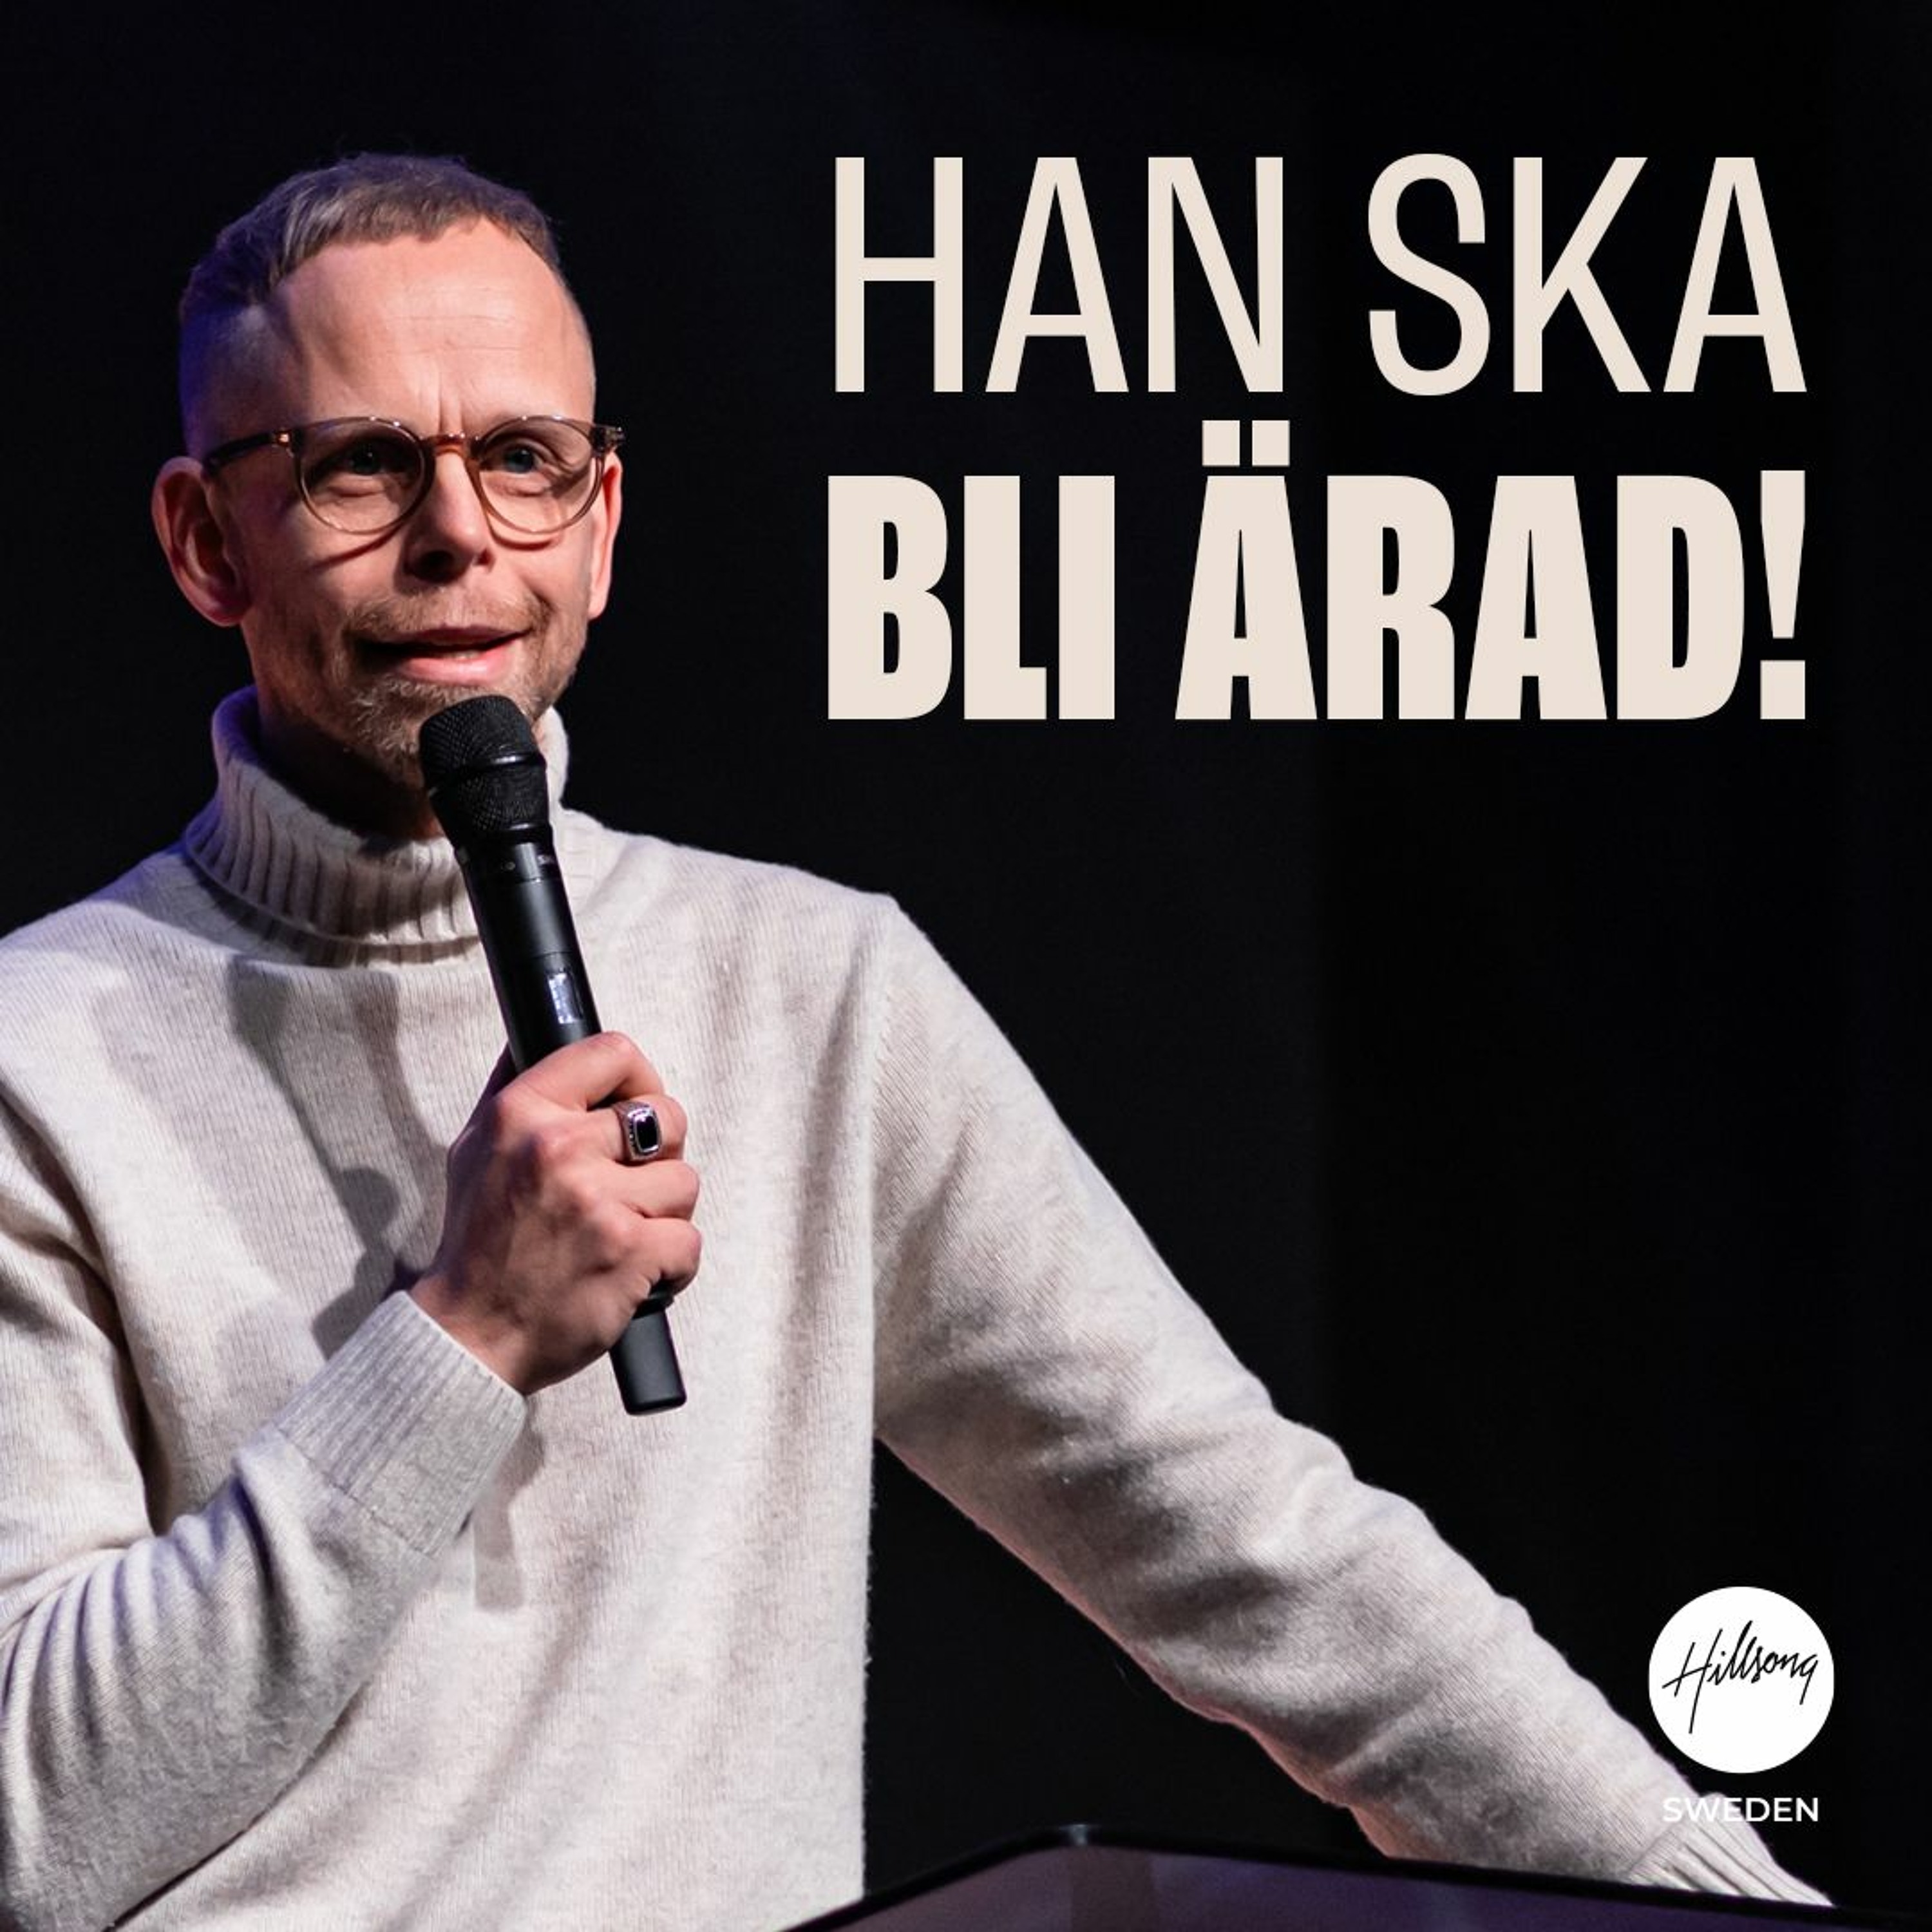 Andreas Nielsen - Han ska bli ärad!